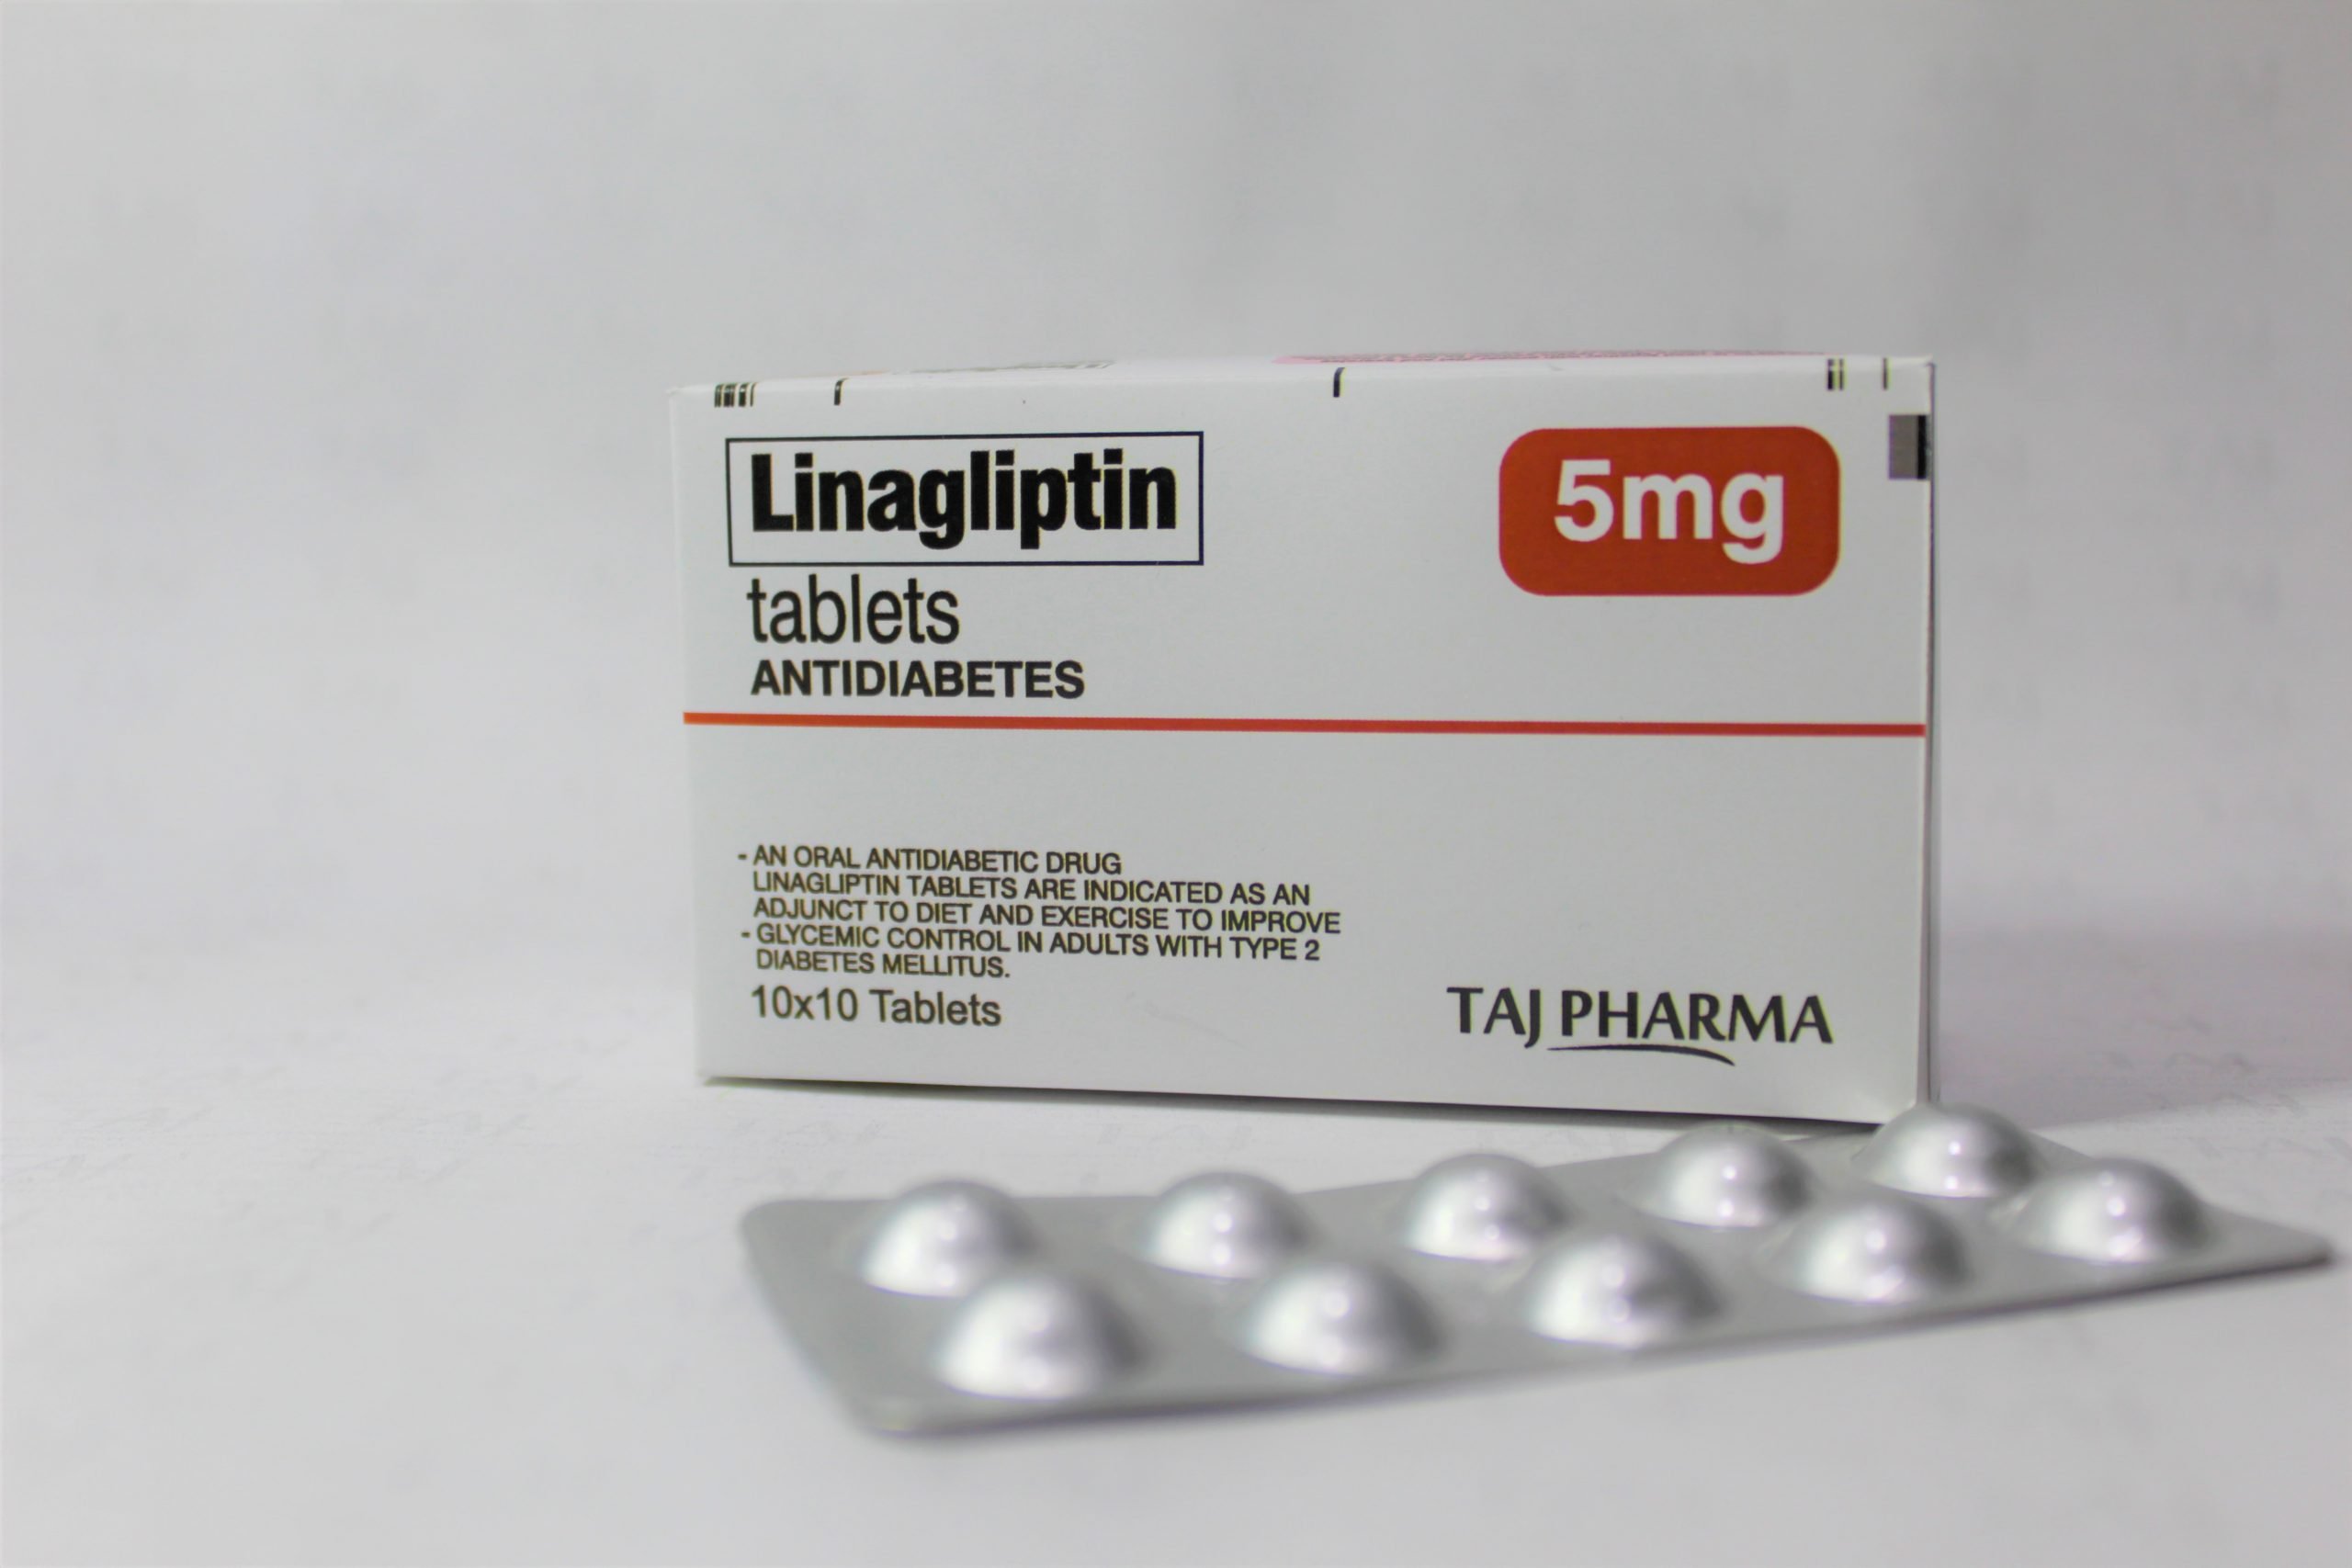 linagliptin-tablets-5mg-Taj-P-3-scaled.jpg